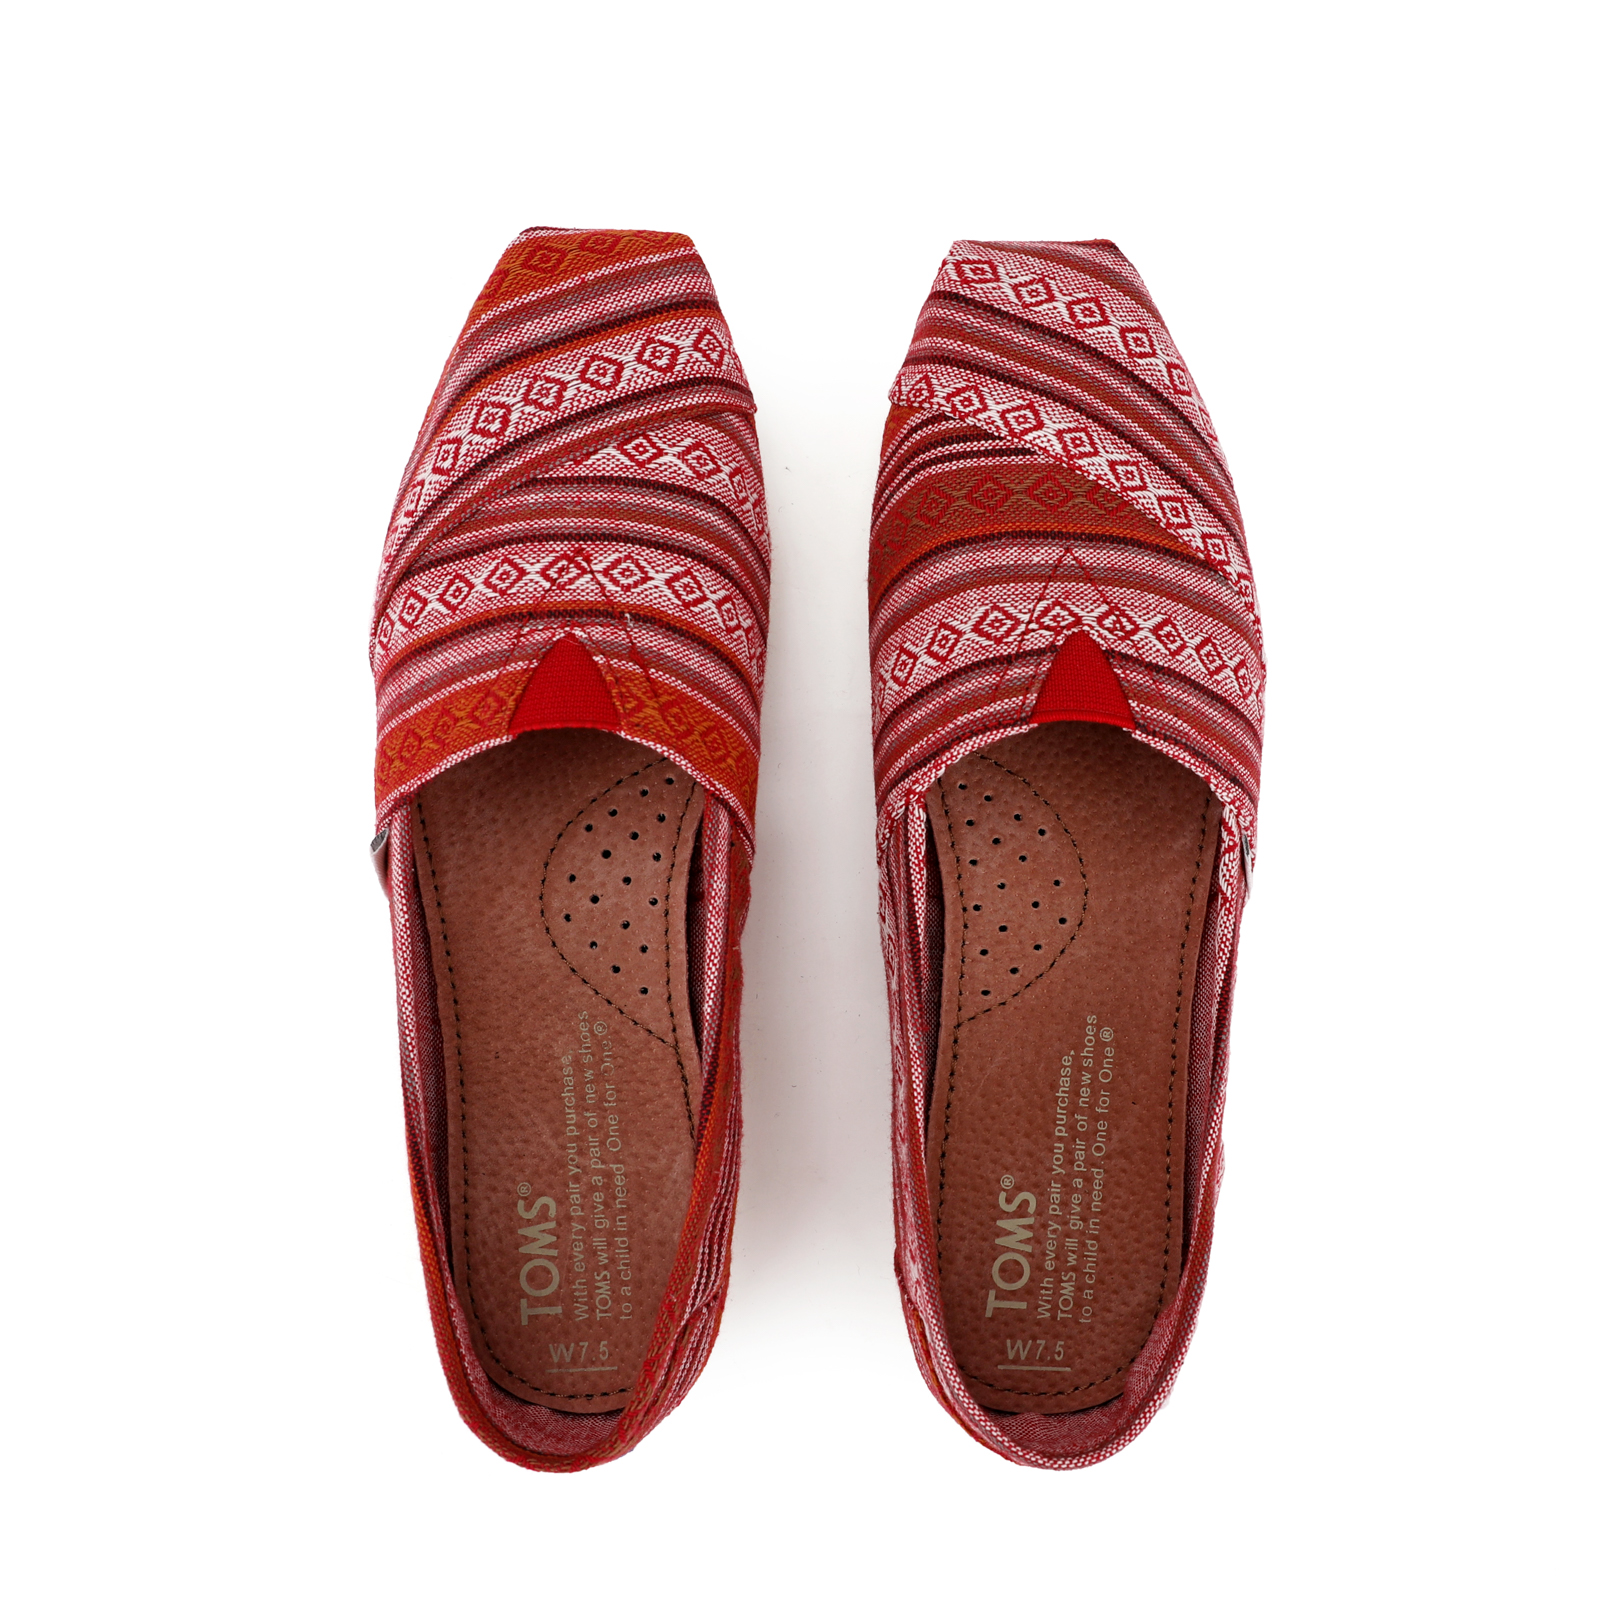 TOMS 台灣新款時尚酒紅條紋帆布女鞋 - 點擊圖片關閉